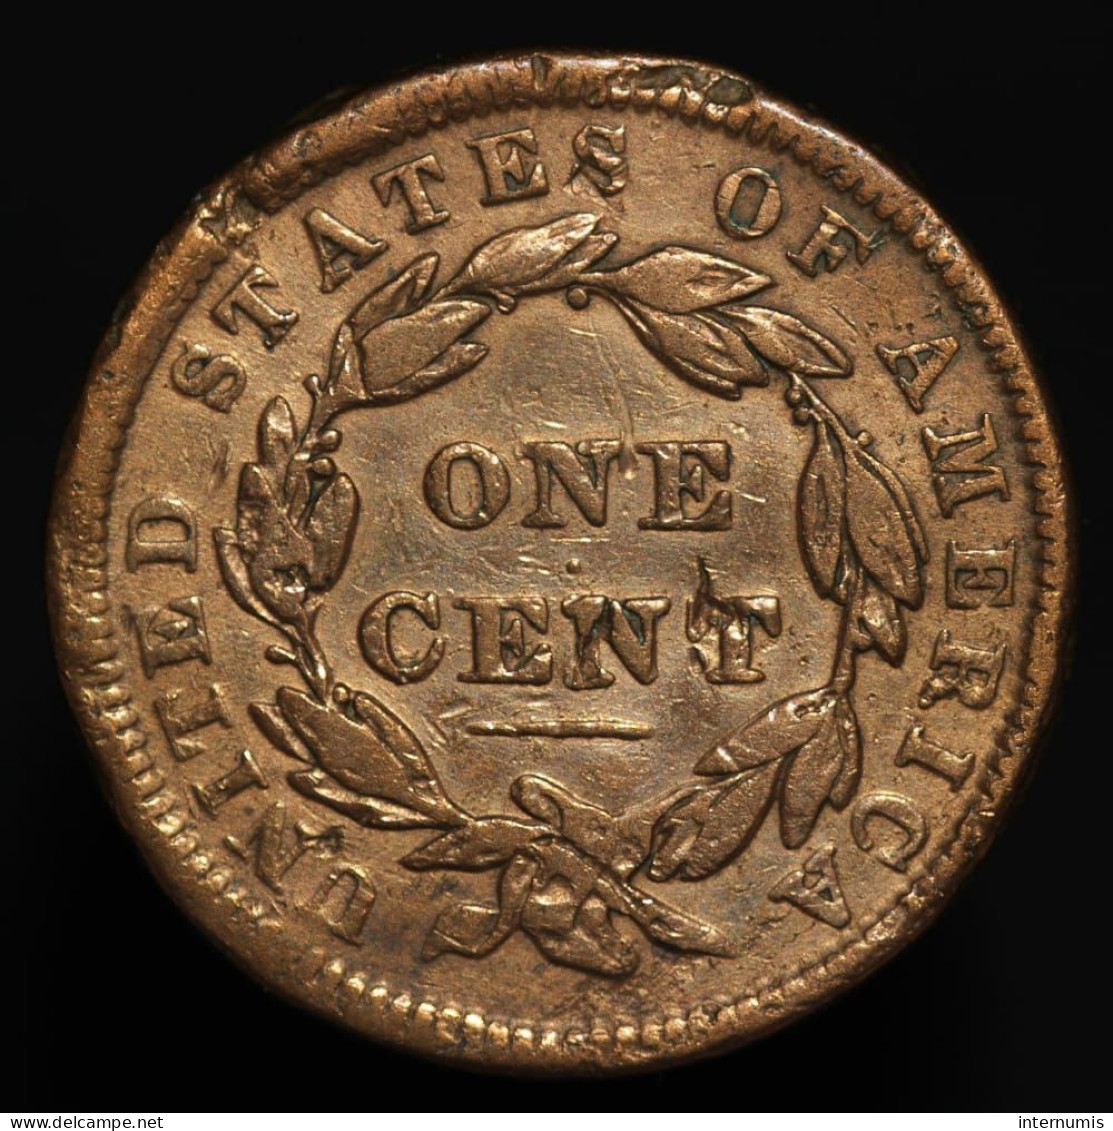 Etats-Unis / USA, Liberty Head, 1 Cent, 1838, Cuivre (Copper), TTB (EF), KM#45.2 - 1816-1839: Coronet Head (Tête Couronnée)